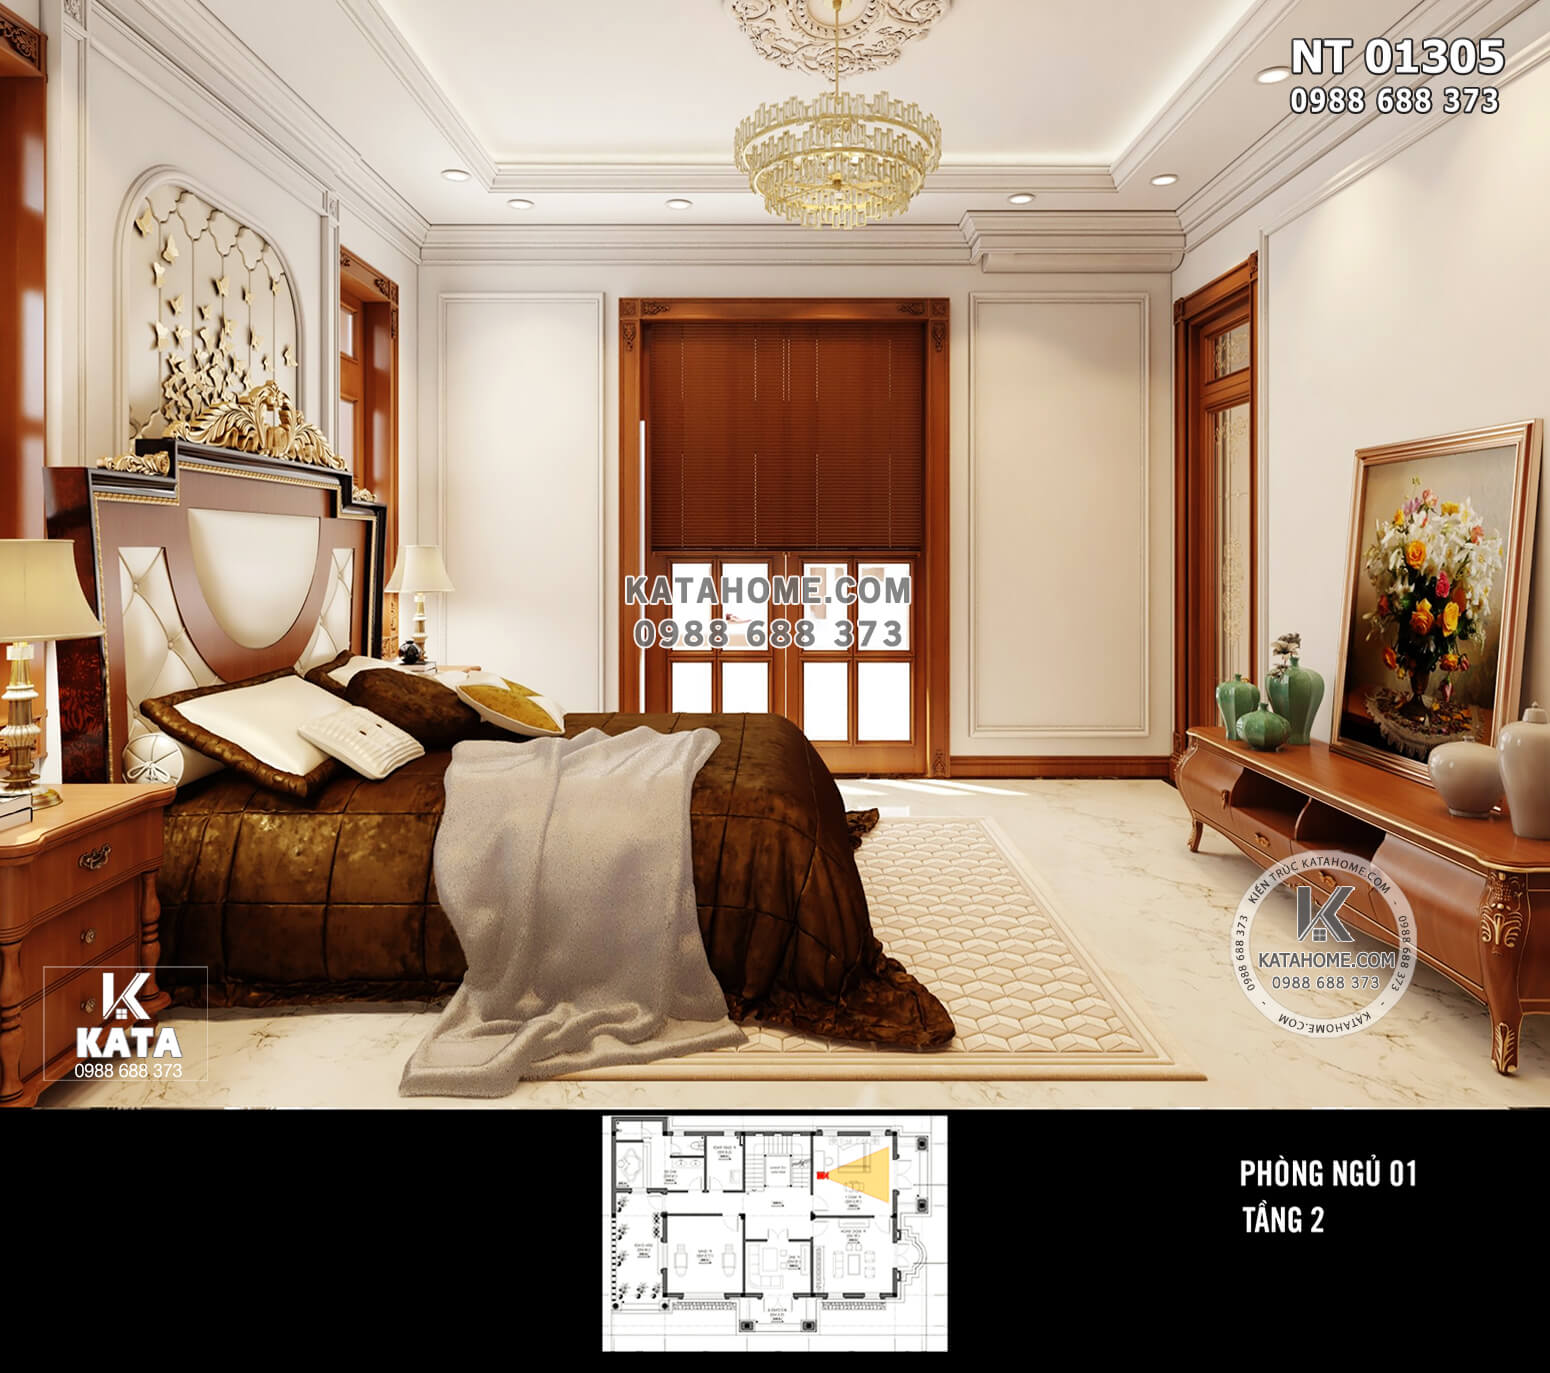 Hình ảnh: Các món đồ nội thất phòng ngủ được sắp xếp gọn gàng, bắt mắt